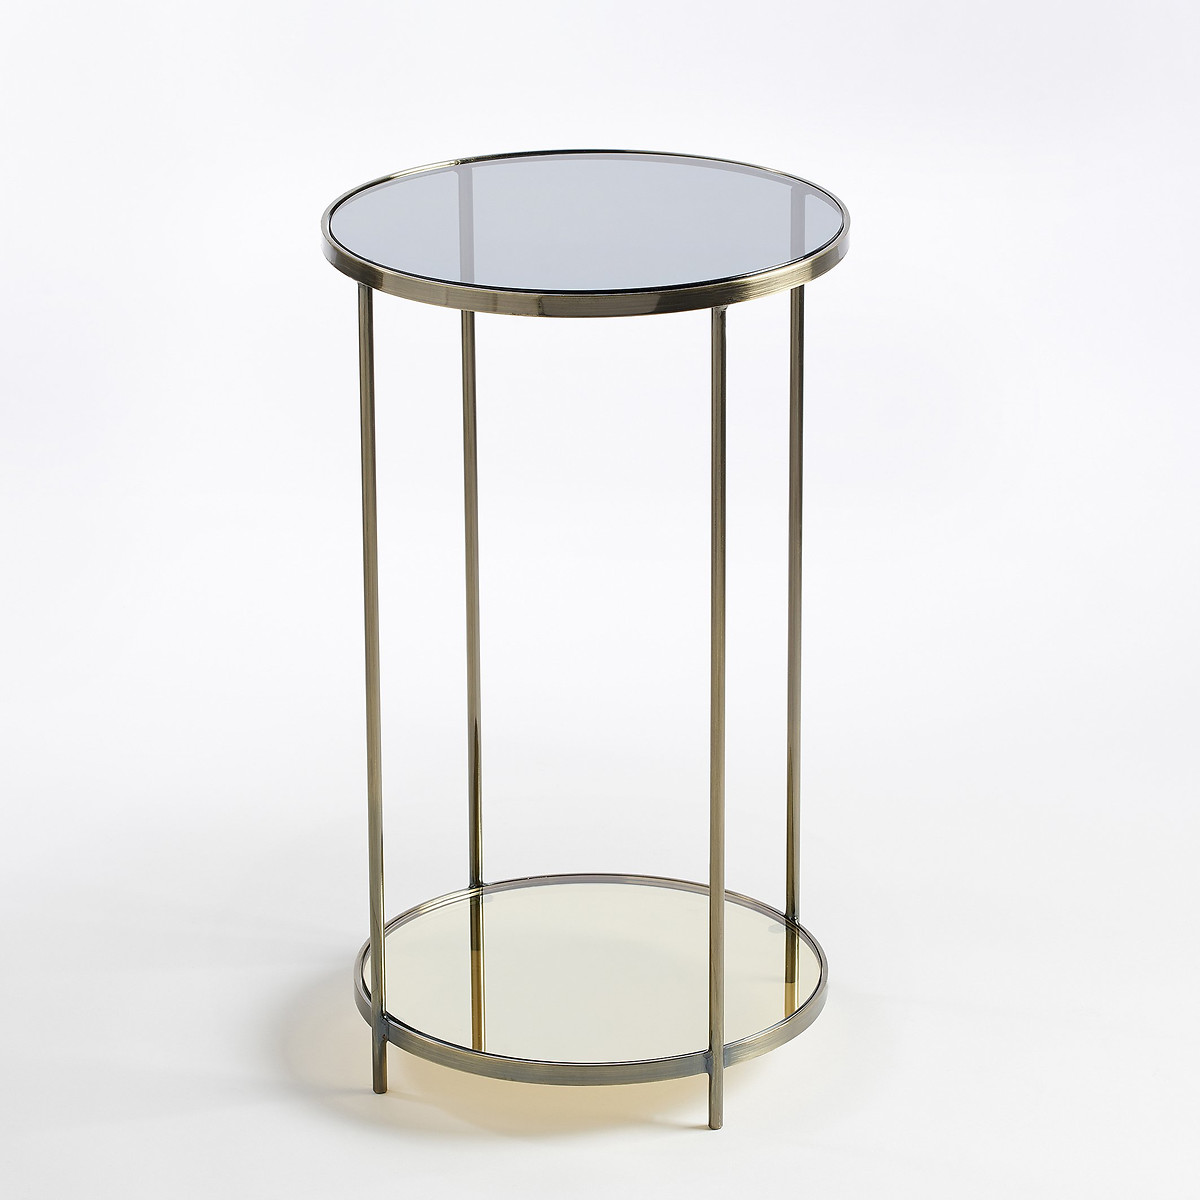 Столик круглый Ulupna единый размер золотистый прямоугольный журнальный столик из закаленного стекла sybil единый размер другие